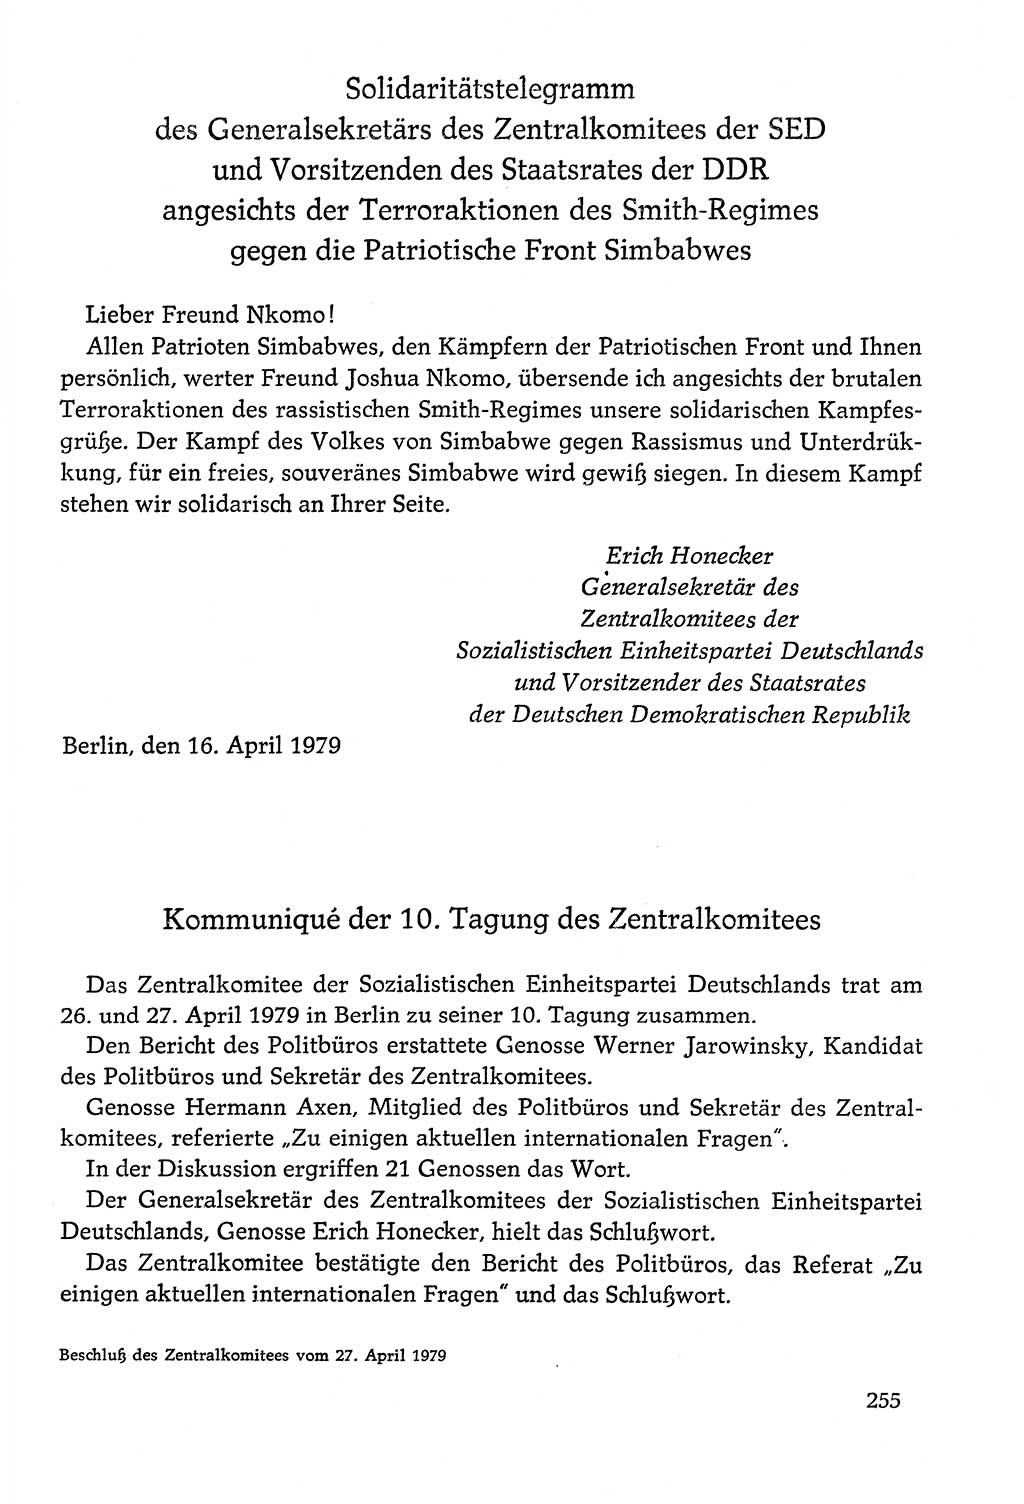 Dokumente der Sozialistischen Einheitspartei Deutschlands (SED) [Deutsche Demokratische Republik (DDR)] 1978-1979, Seite 255 (Dok. SED DDR 1978-1979, S. 255)